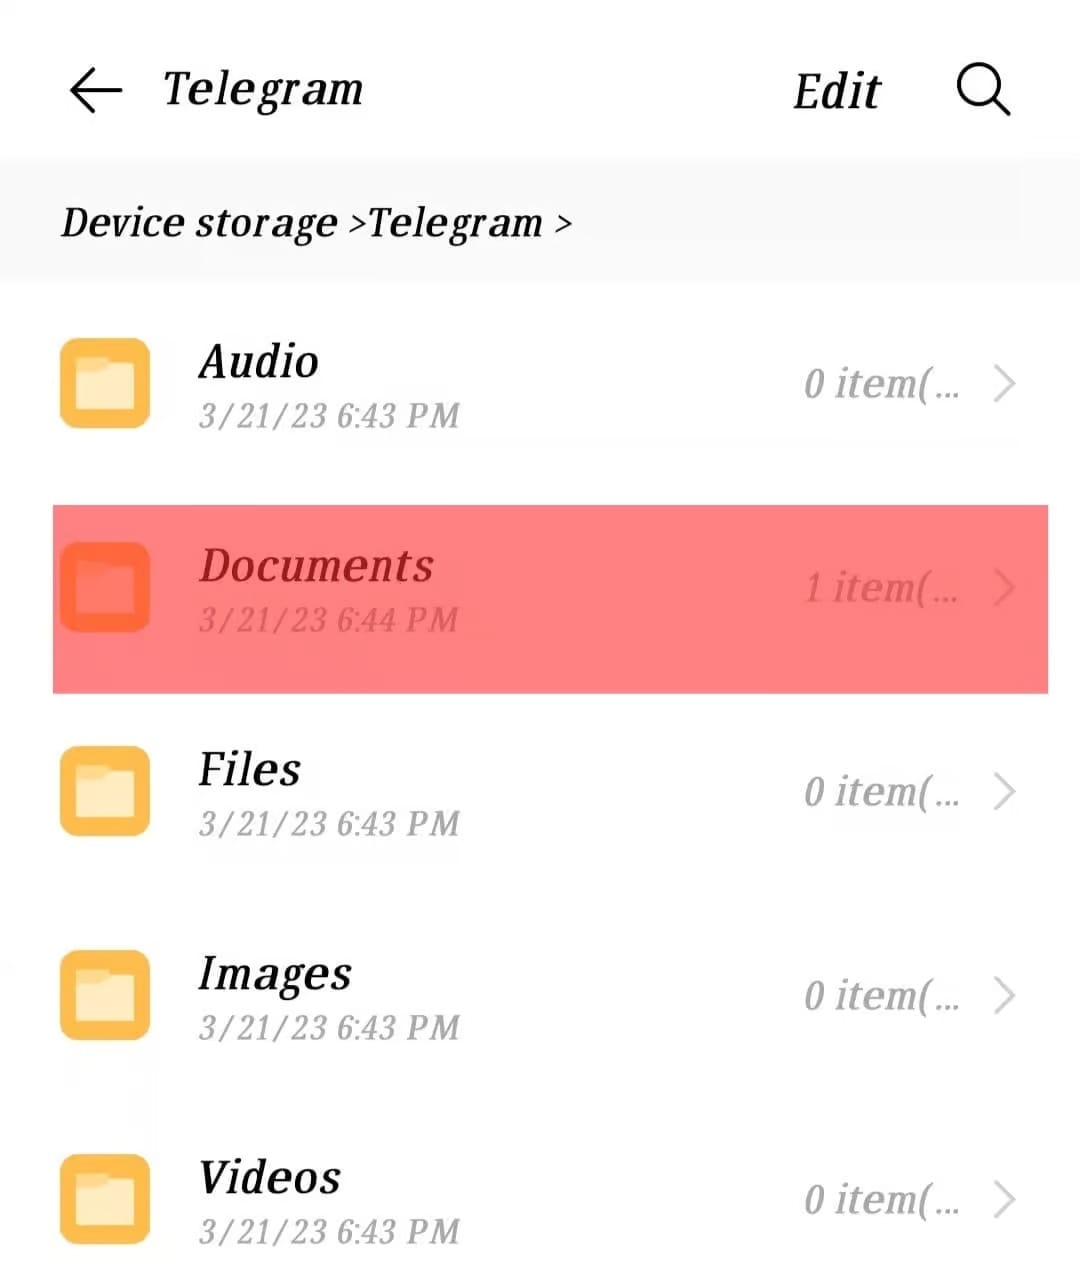 محل ذخیره دانلودهای تلگرام از File Manager در اندروید - چیکاو